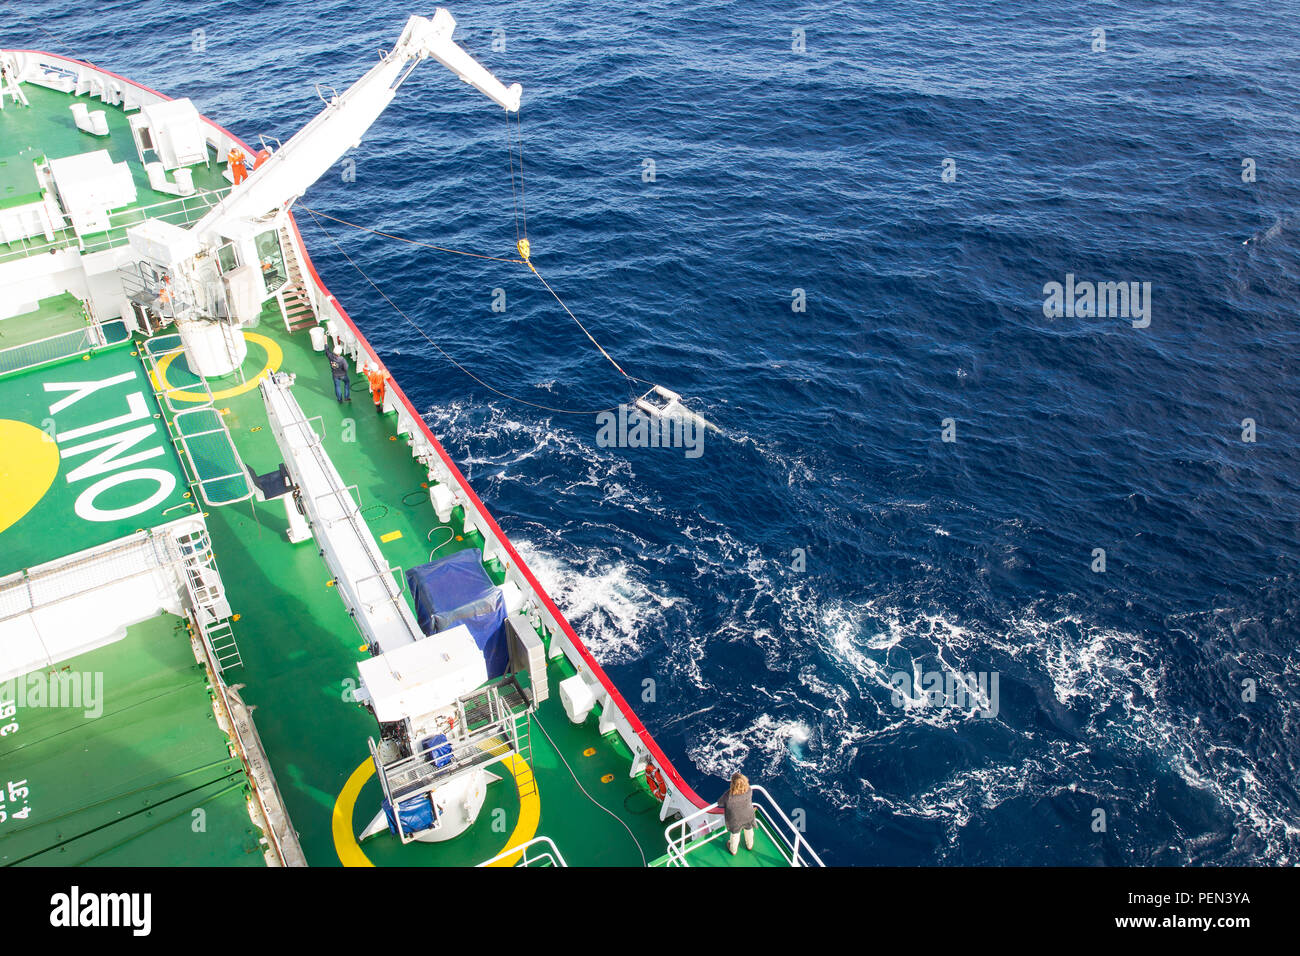 Neuston net remolca desde un buque de investigación es una técnica de muestreo para evaluar la contaminación plástica marina. Foto de stock